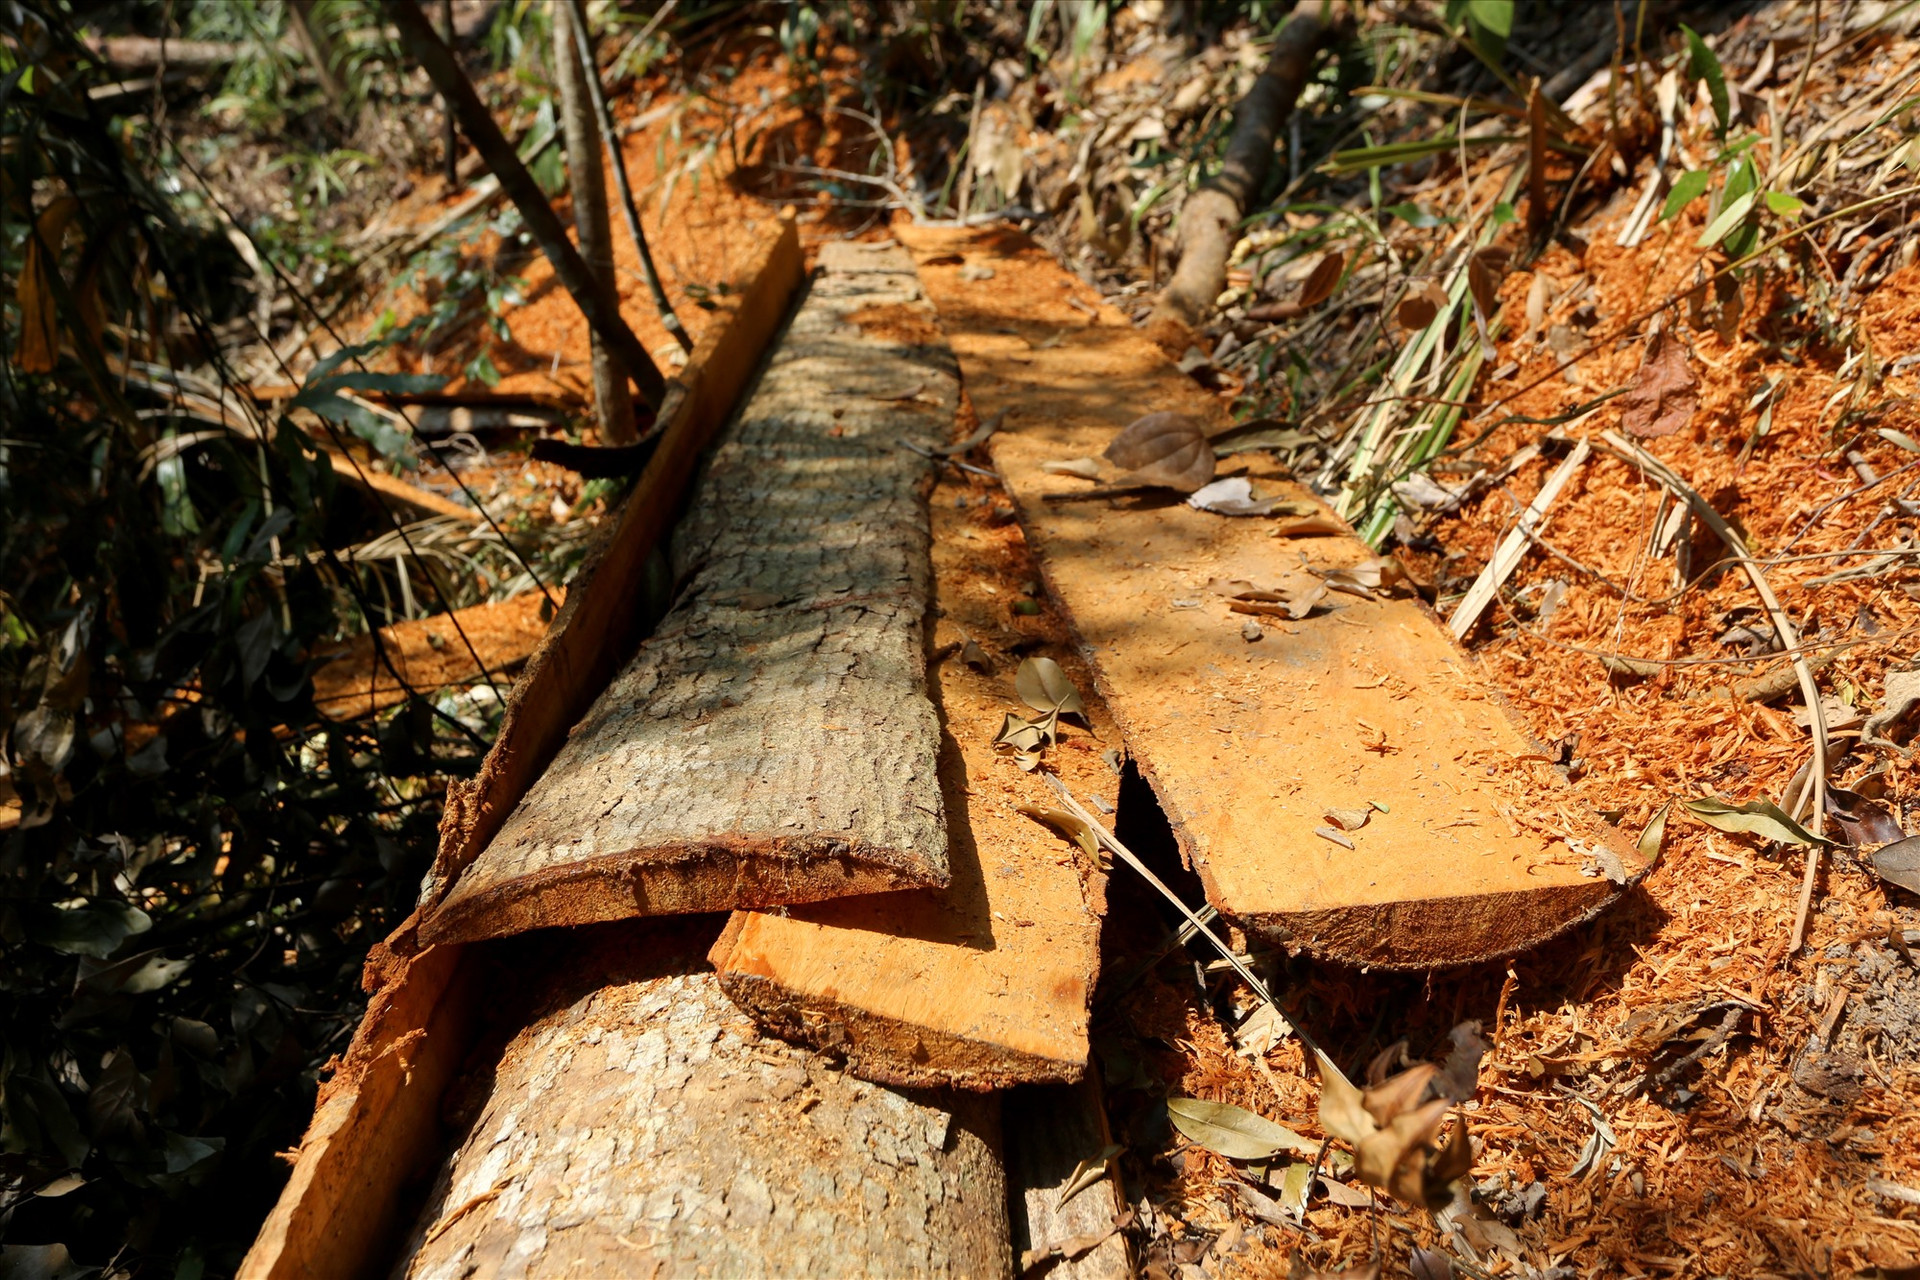 Một cây gỗ bị lâm tặc đốn hạ, cửa xẻ tách phần vỏ cây phía ngoài để lấy lõi bên trong rồi vận chuyển đi, để lại mùn và bìa thân gỗ chất đống